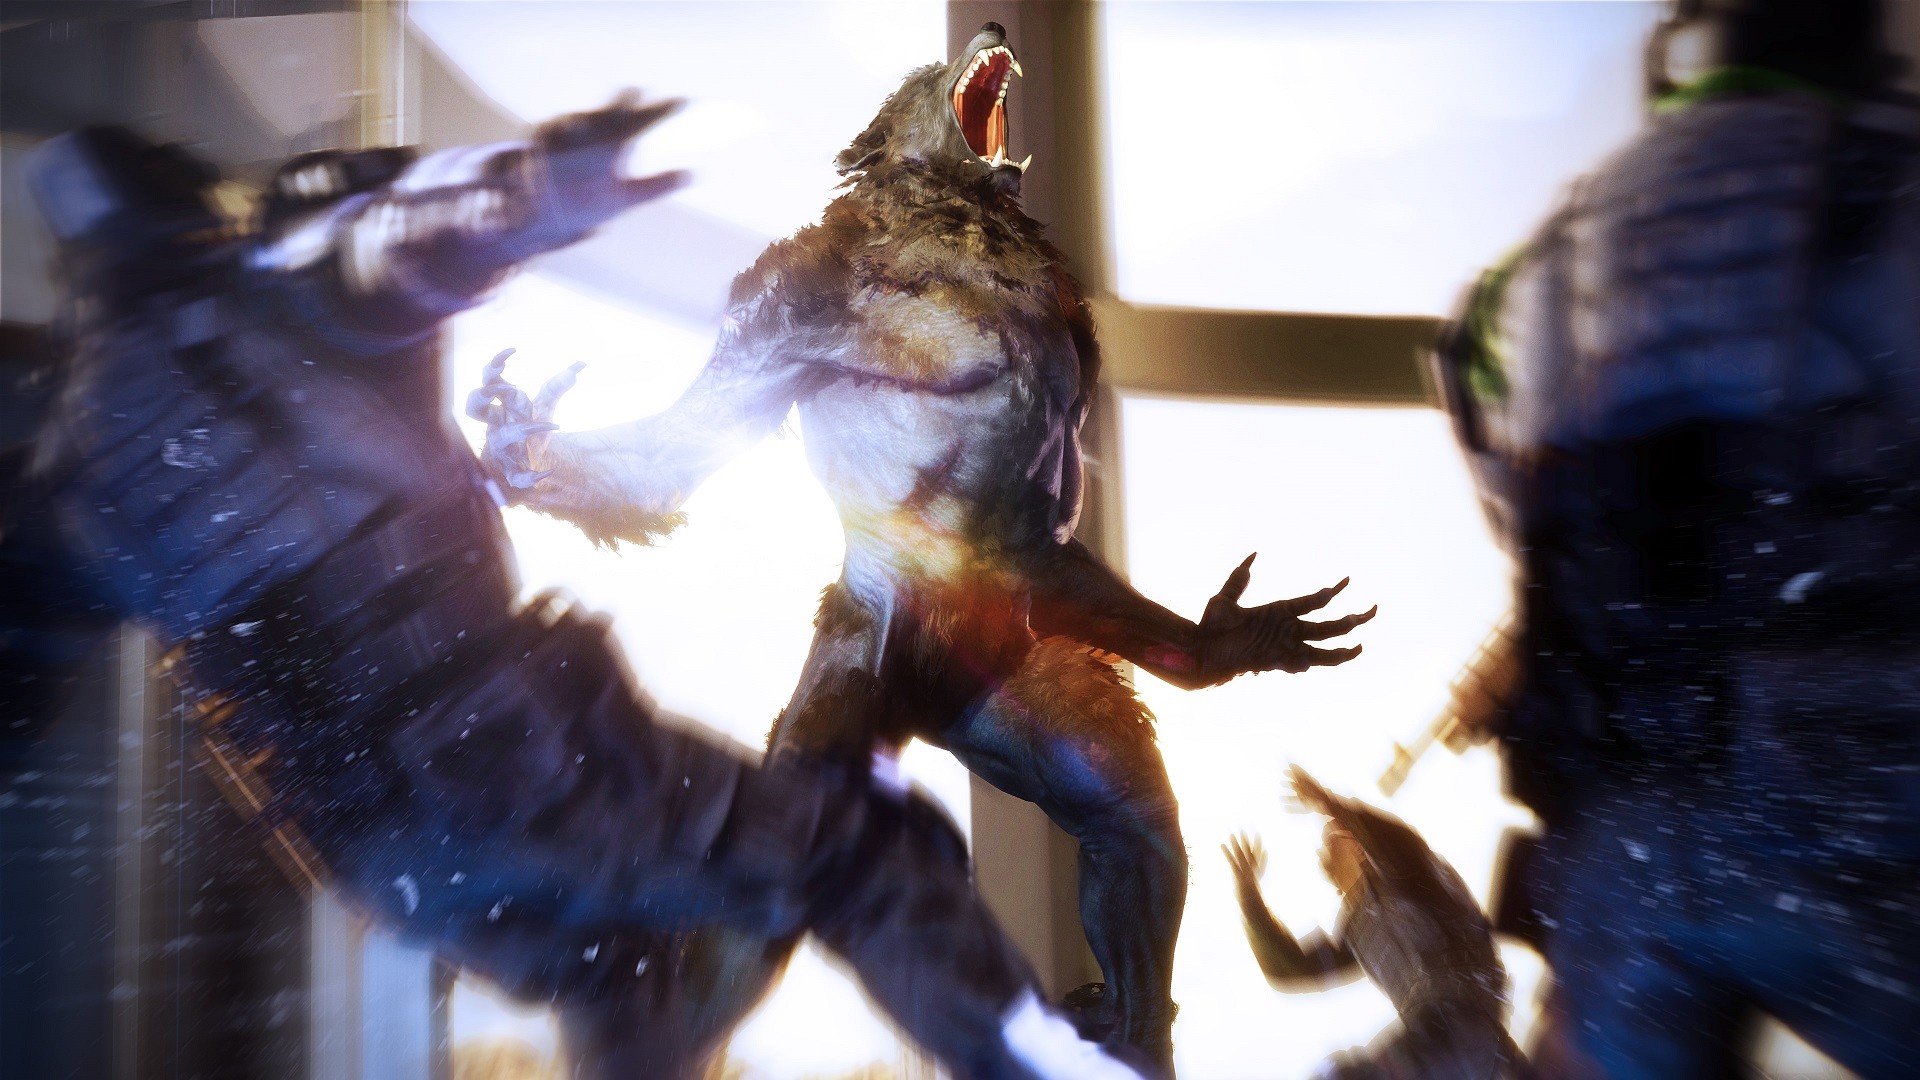 PlayStation Now adds PlayStation Now adds Werewolf: The Apocalypse - Earthblood